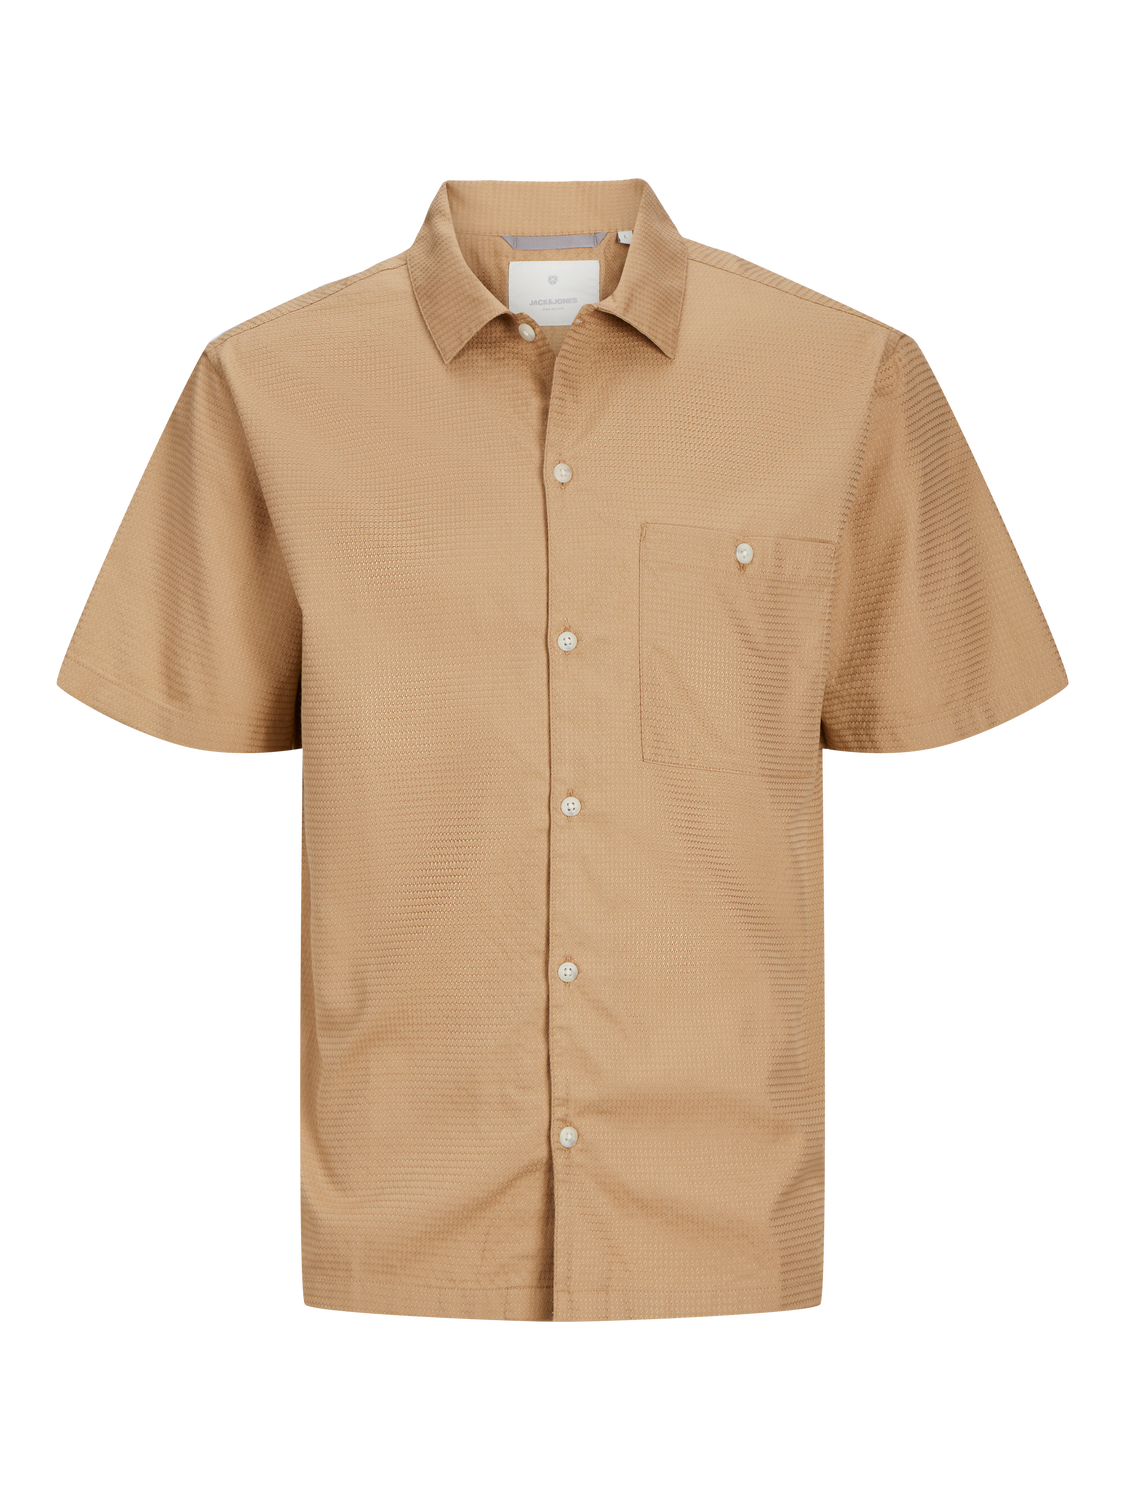 Jack & Jones Relaxed Fit Shirt -Tannin - 12255001